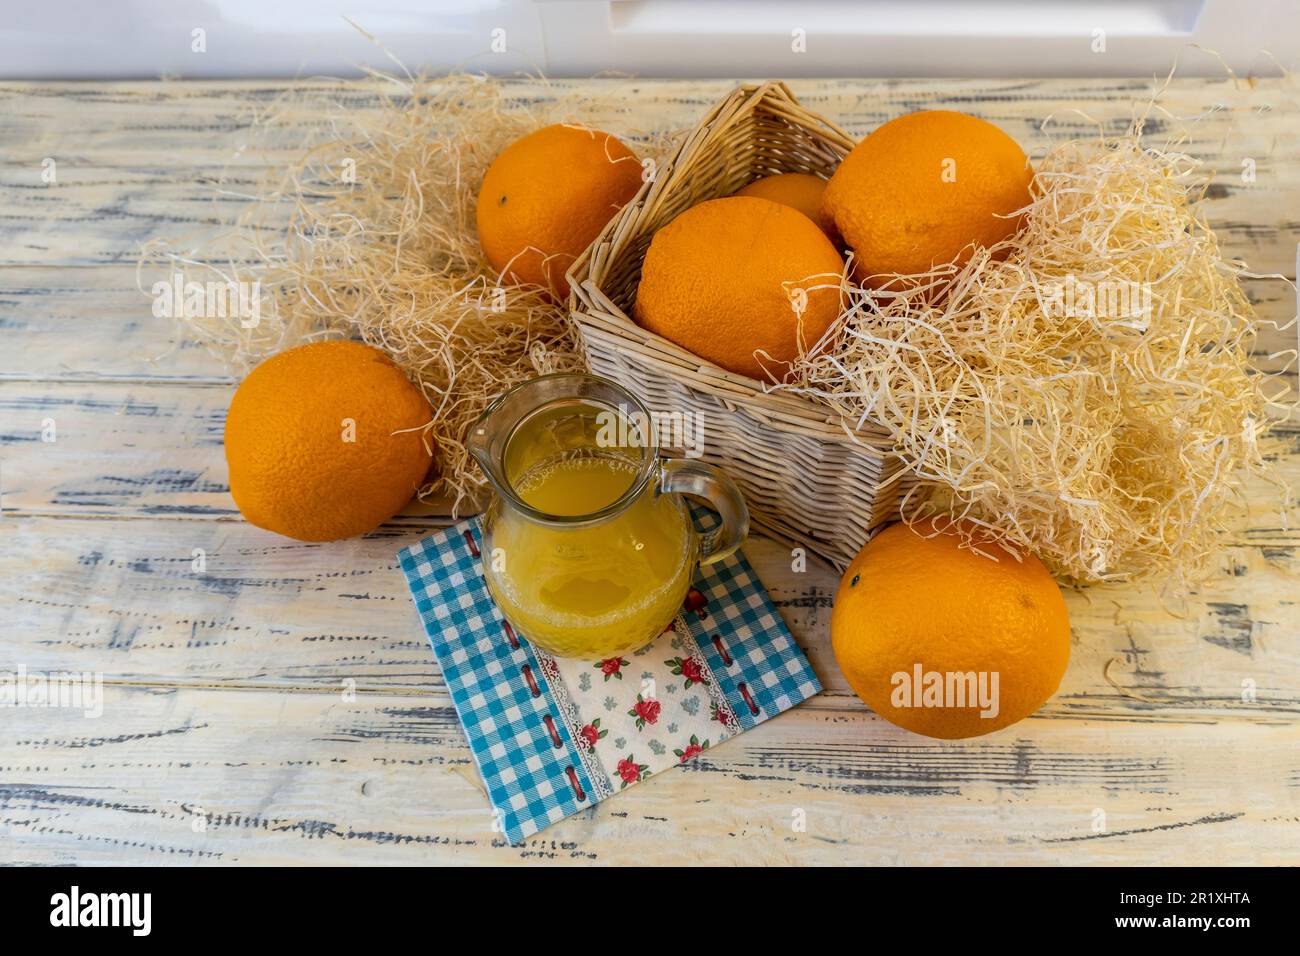 Vita morta con arance, cesto e brocca di vetro con succo su vecchio sfondo di legno luminoso Foto Stock